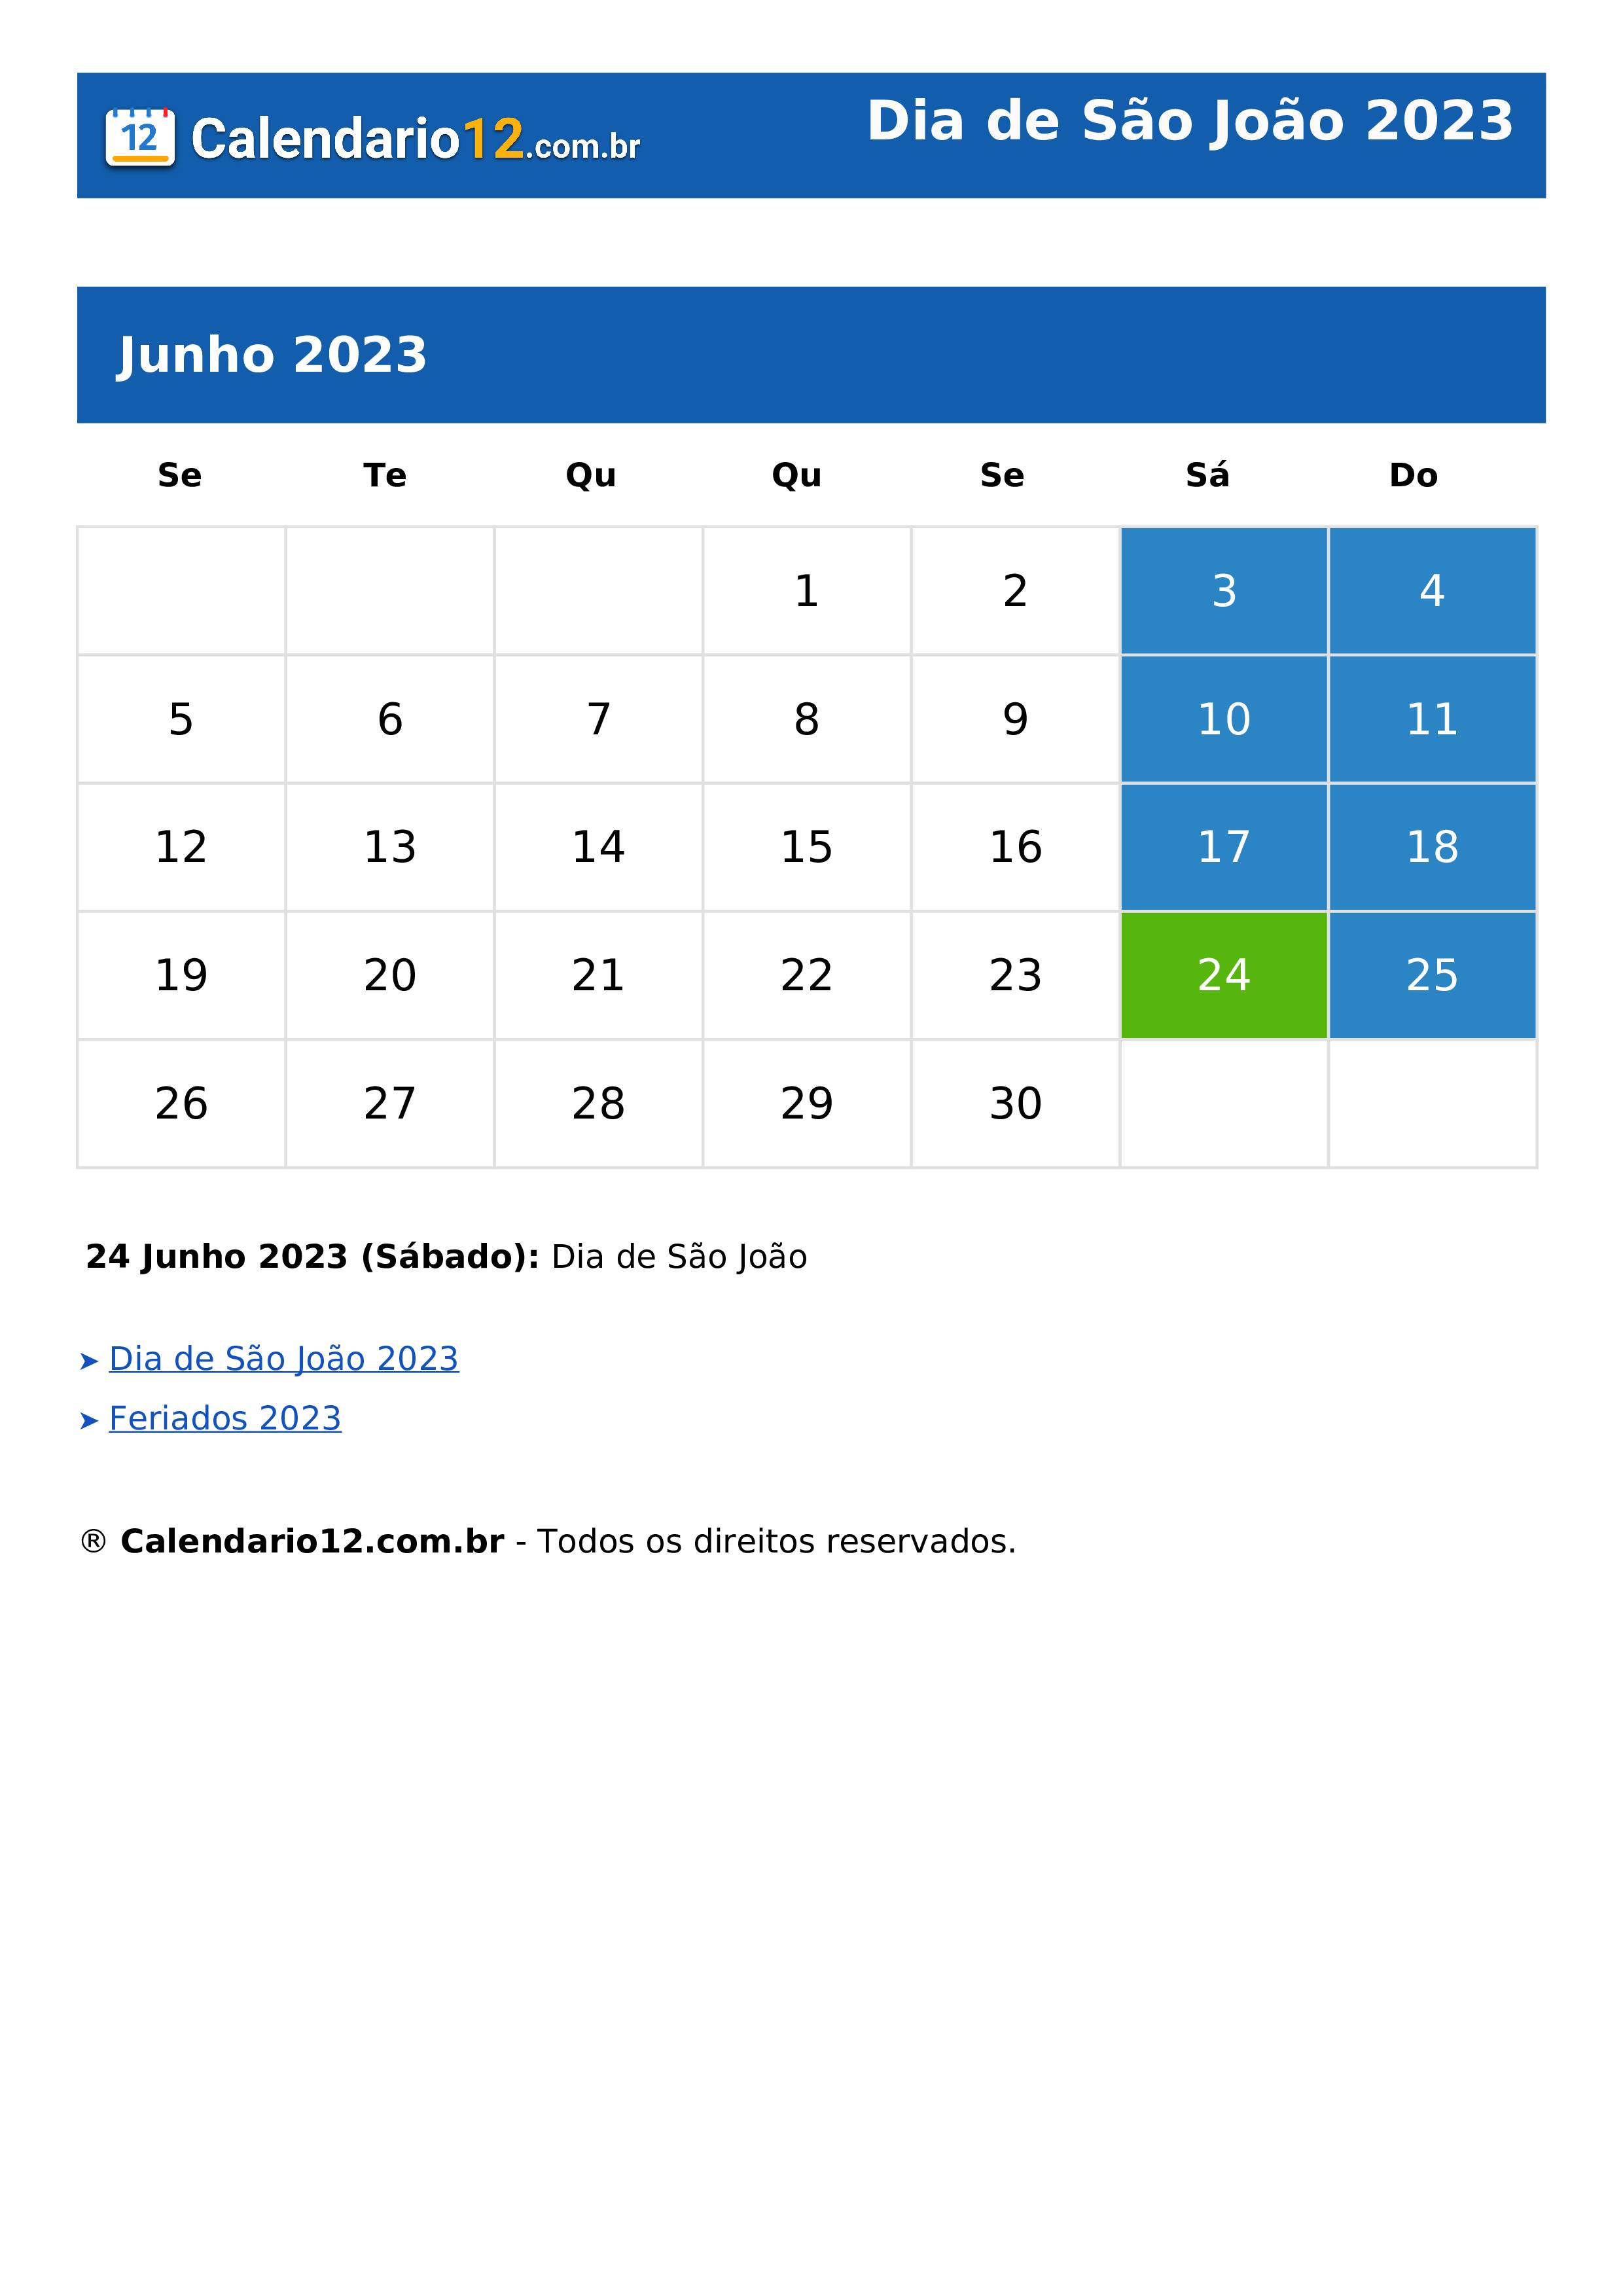 Dia de São João 2023